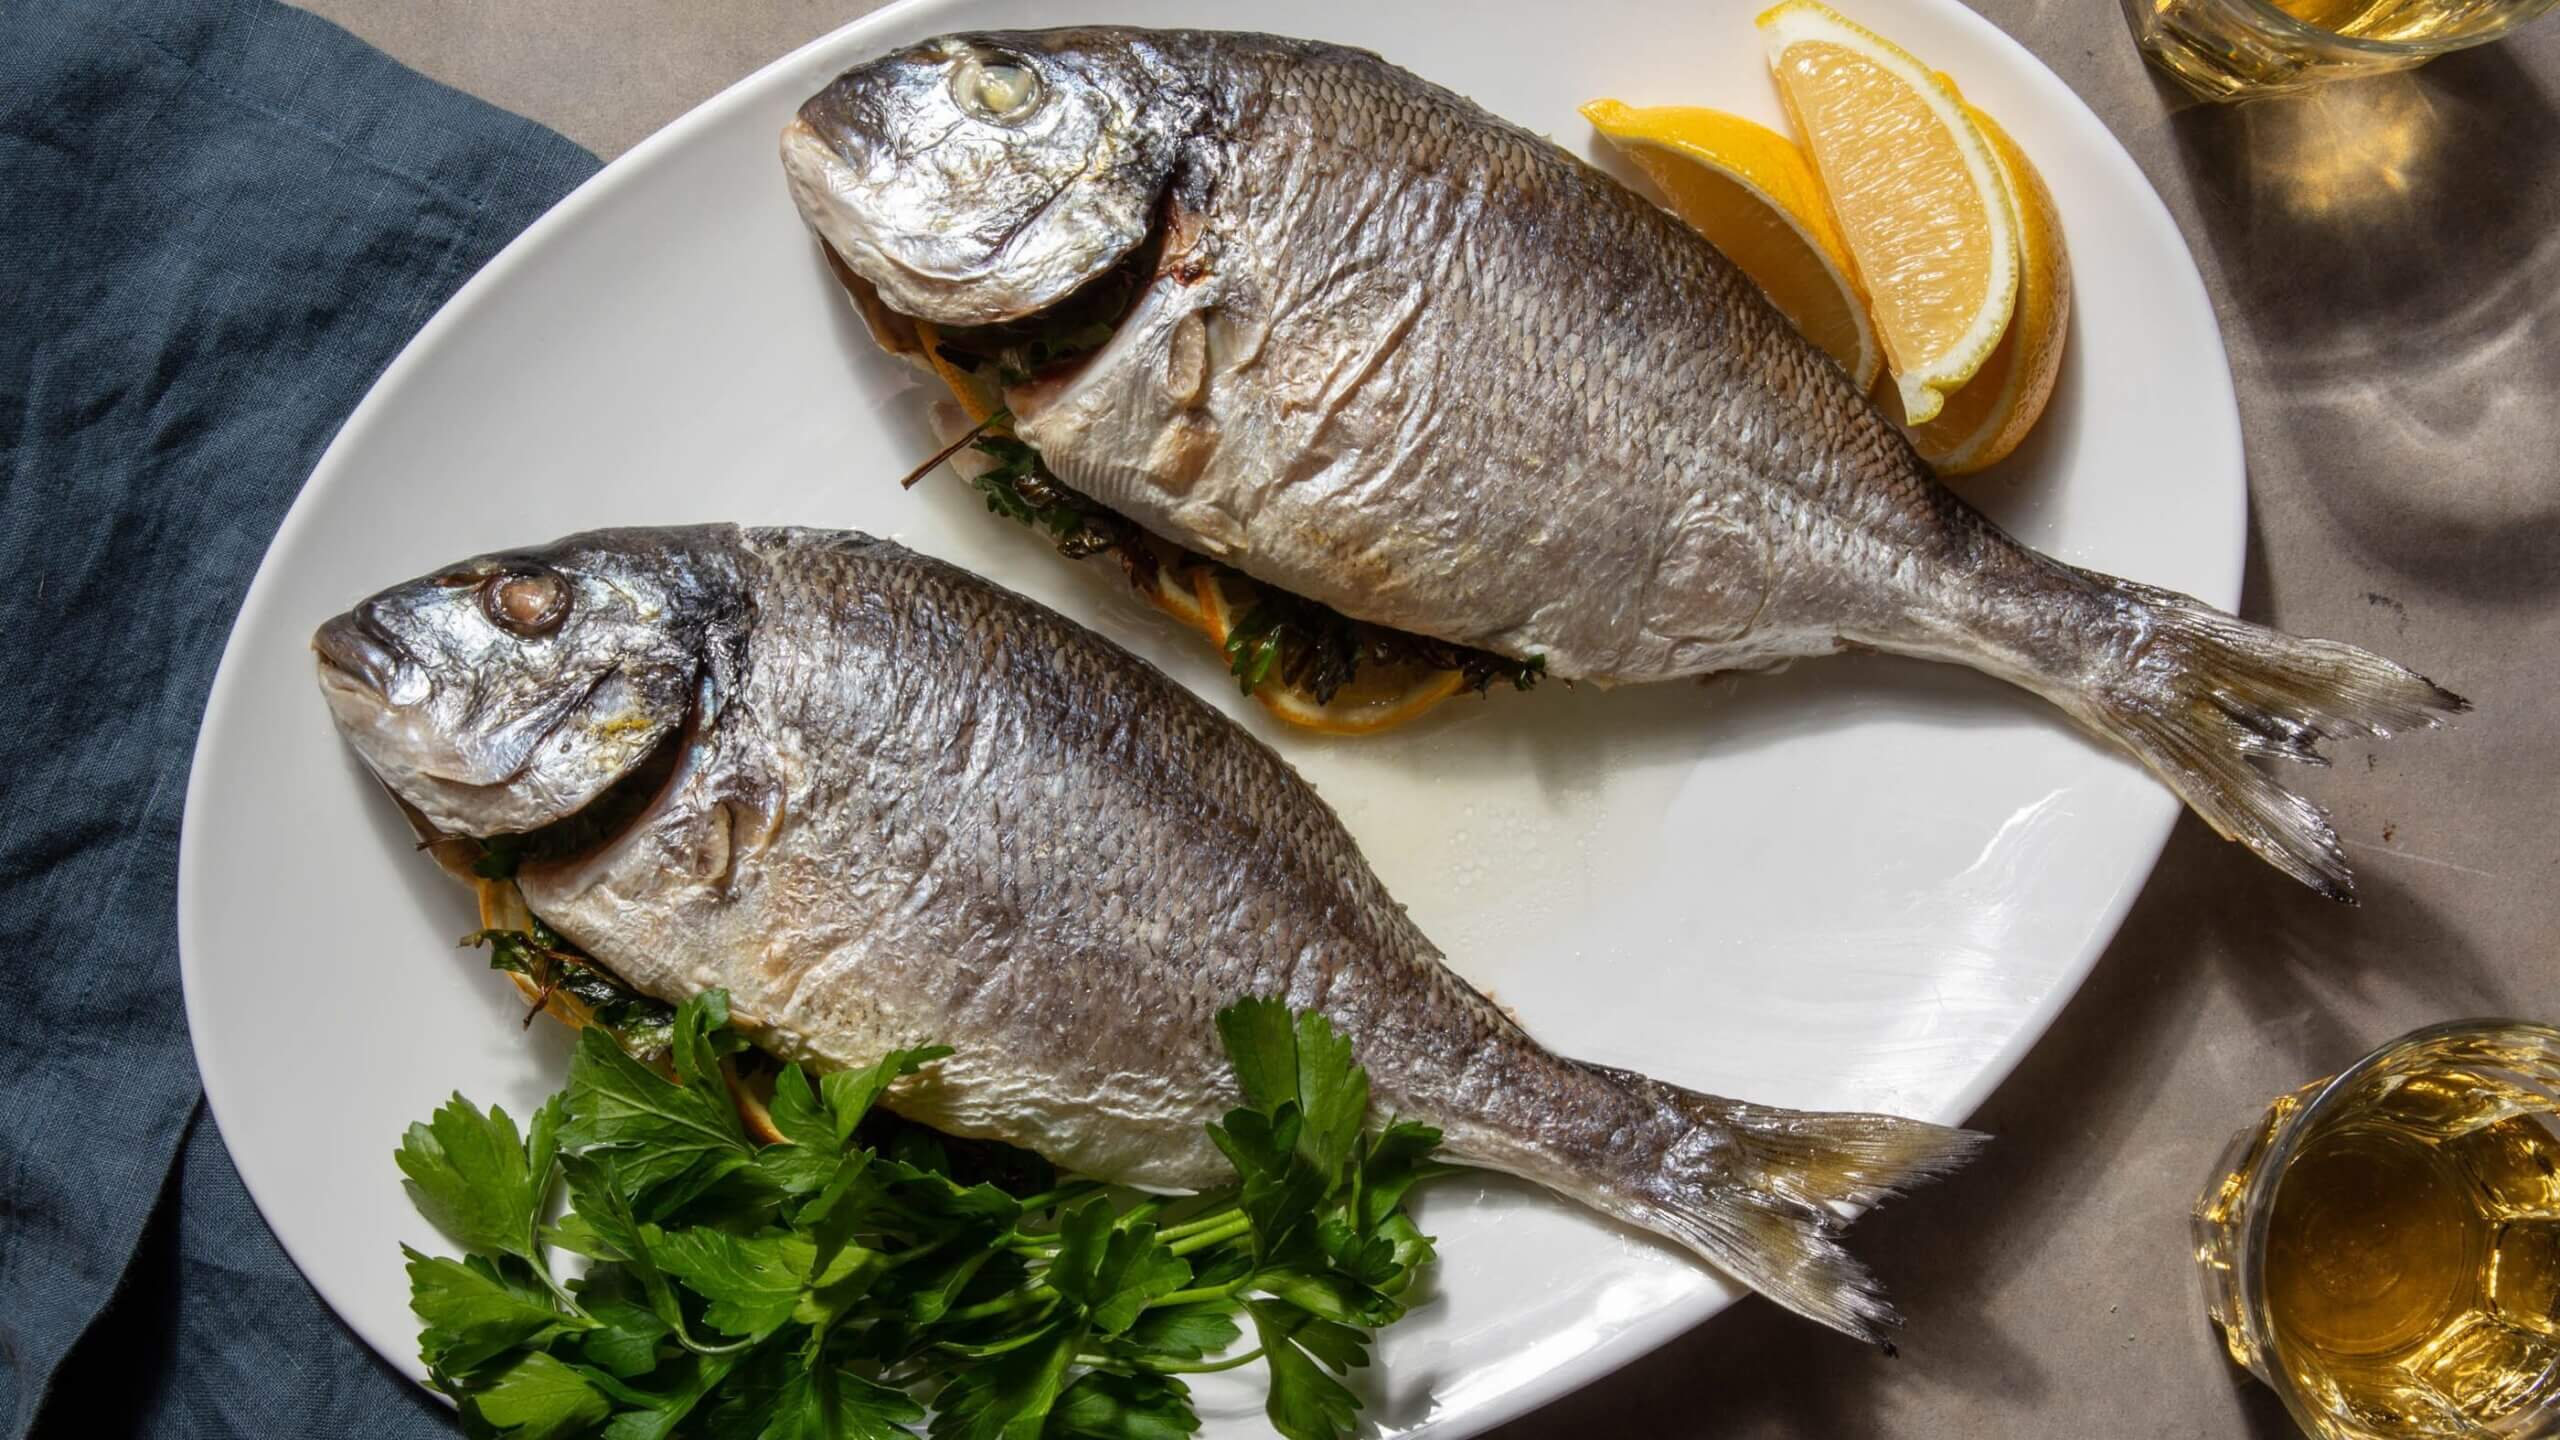 Μπορεί μια διατροφή πλούσια σε ψάρια να οδηγήσει σε καρκίνο του δέρματος;